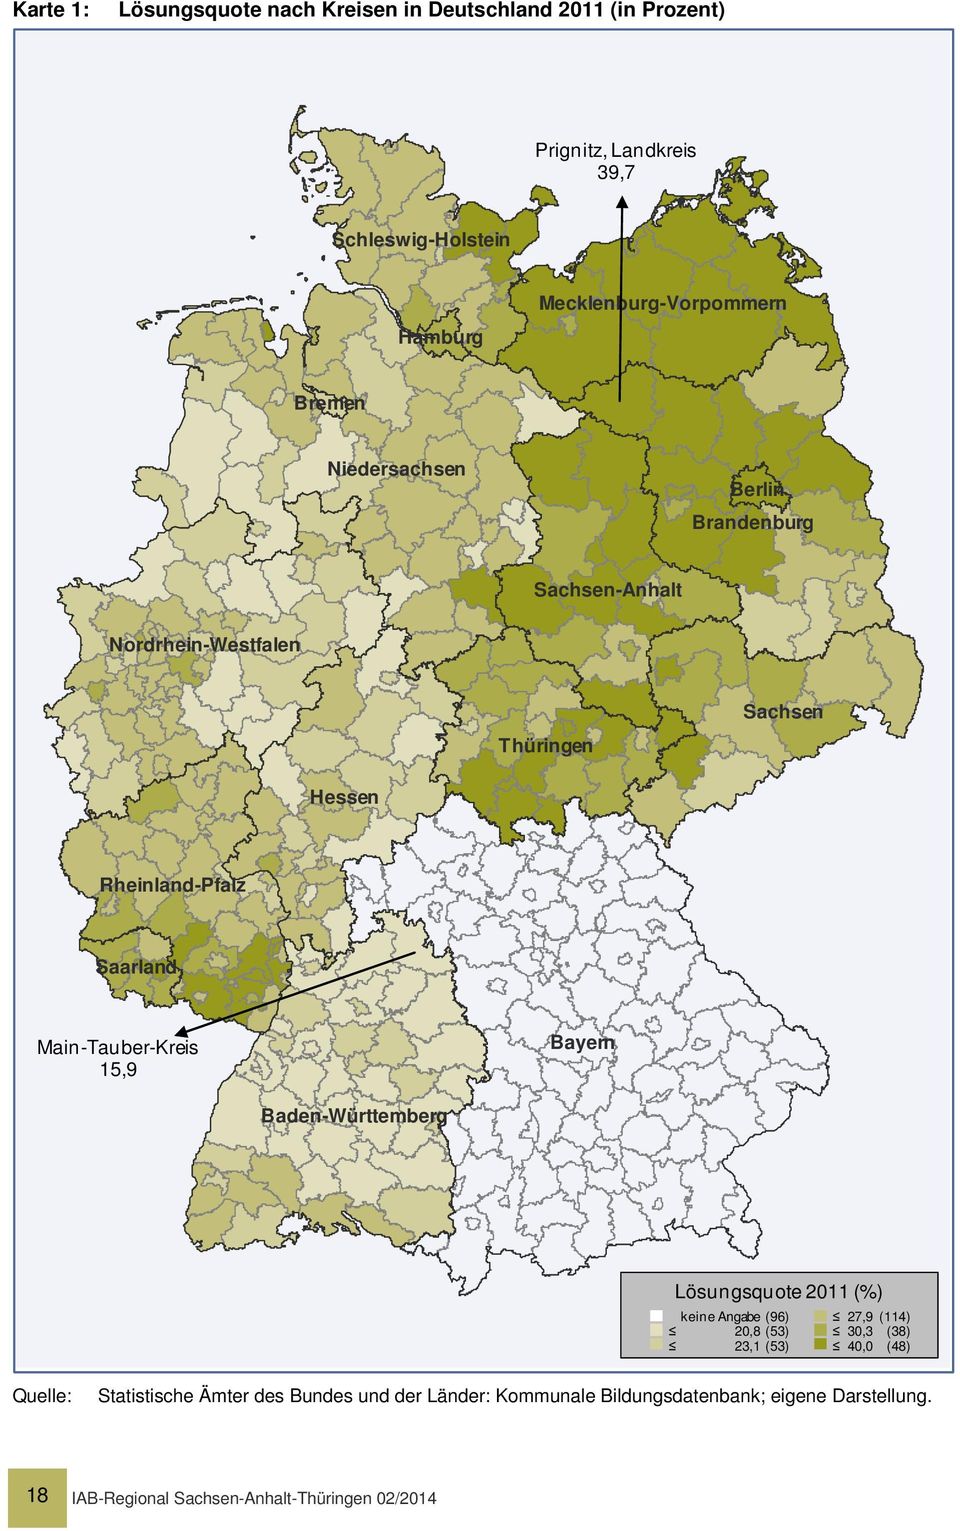 Saarland Main-Tauber-Kreis 15,9 Bayern Baden-Württemberg Lösungsquote 2011 (%) keine Angabe (96) 20,8 (53) 23,1 (53) 27,9 (114) 30,3 (38)